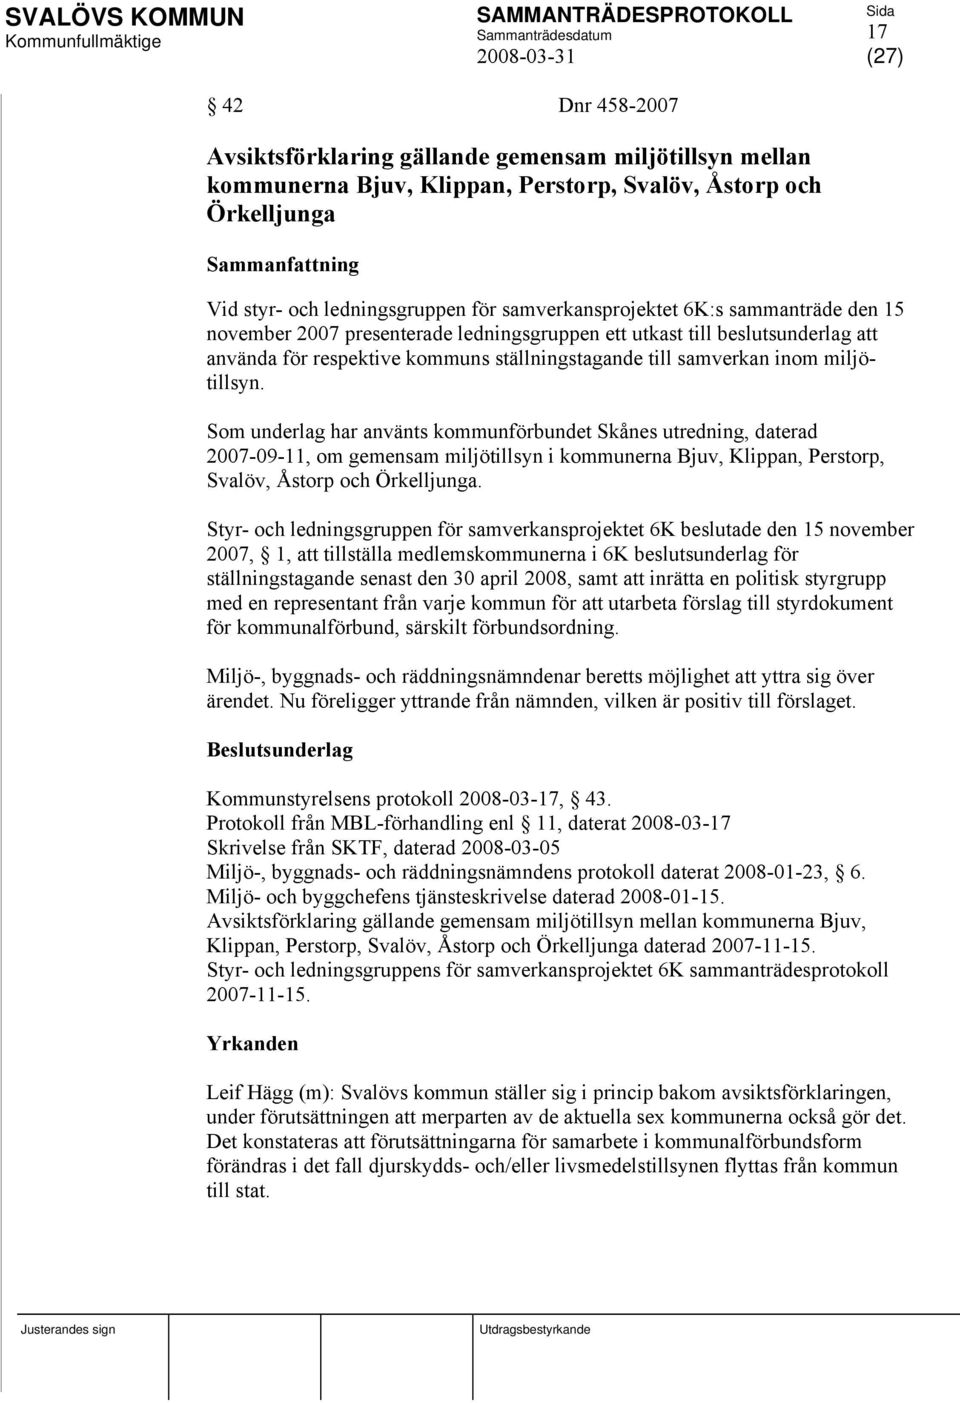 miljötillsyn. Som underlag har använts kommunförbundet Skånes utredning, daterad 2007-09-11, om gemensam miljötillsyn i kommunerna Bjuv, Klippan, Perstorp, Svalöv, Åstorp och Örkelljunga.